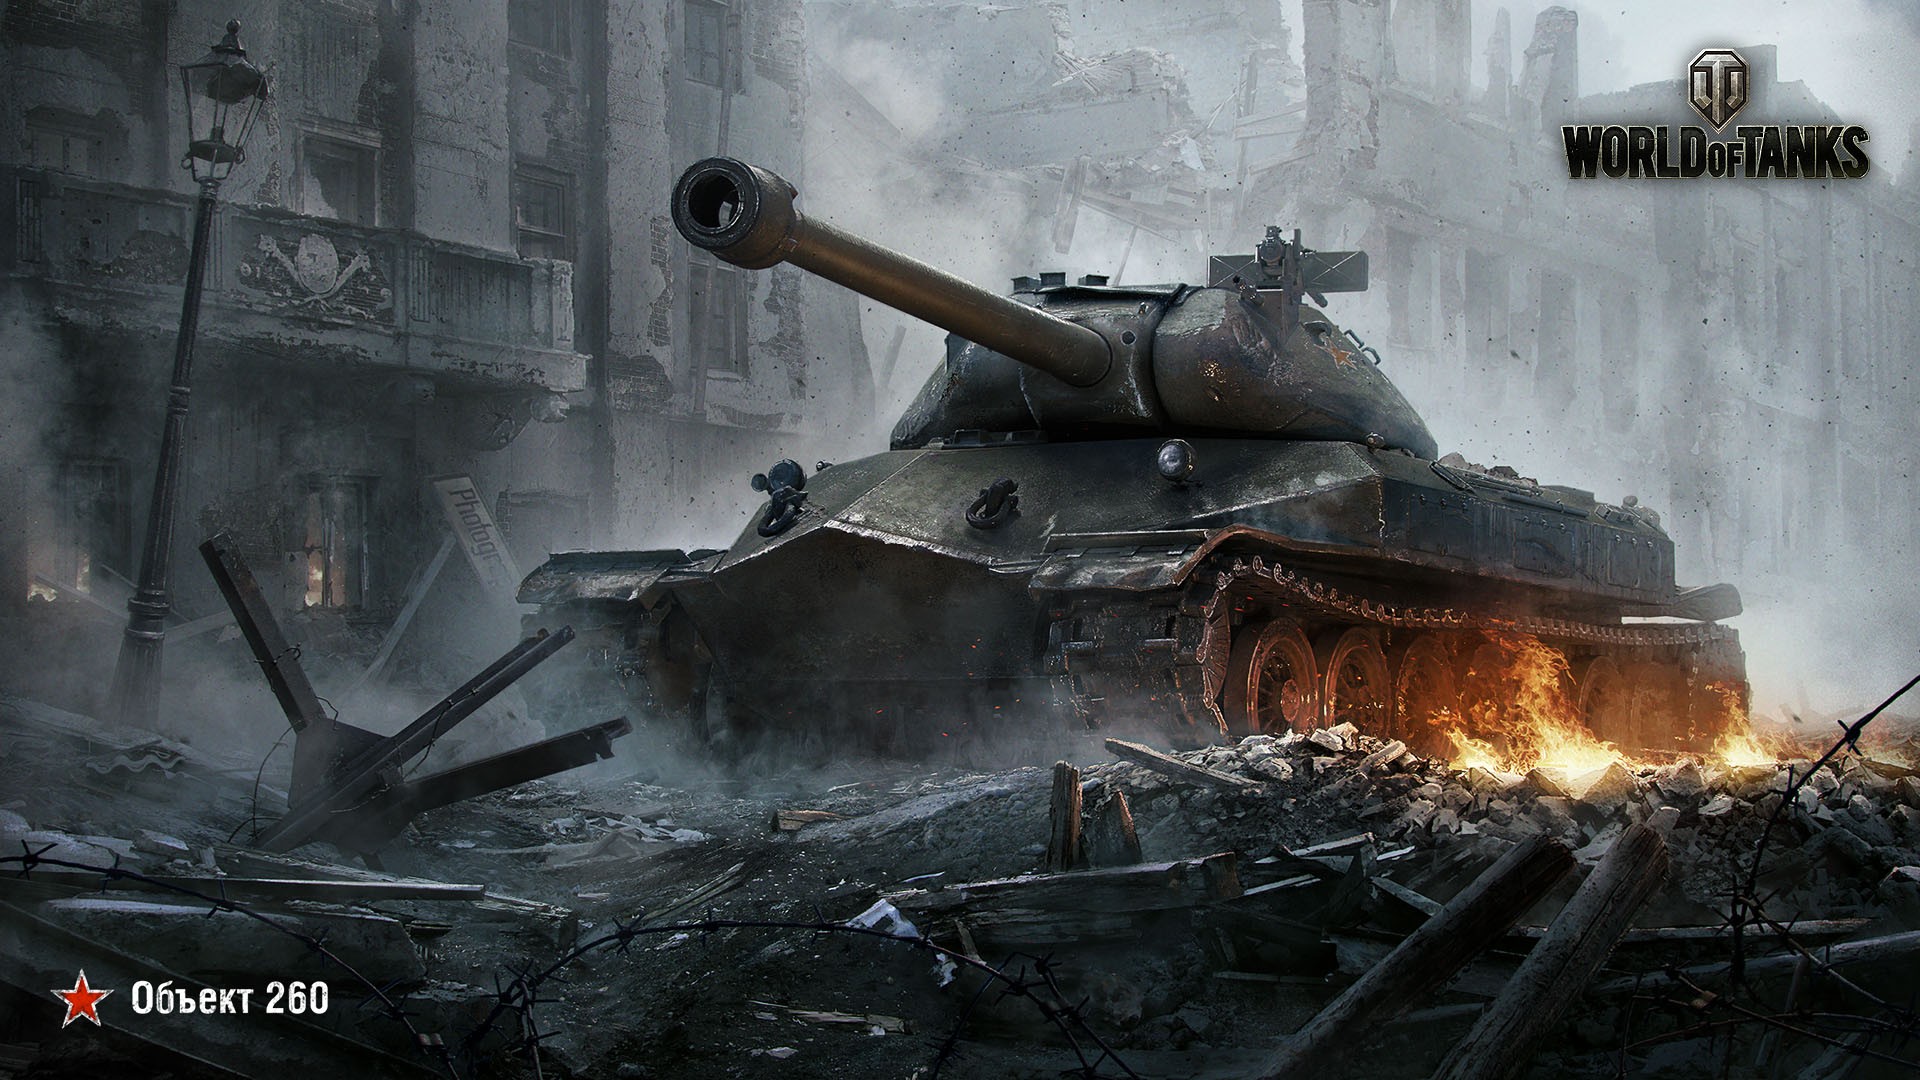 Бесплатное фото Объект 260 из игры World of Tanks